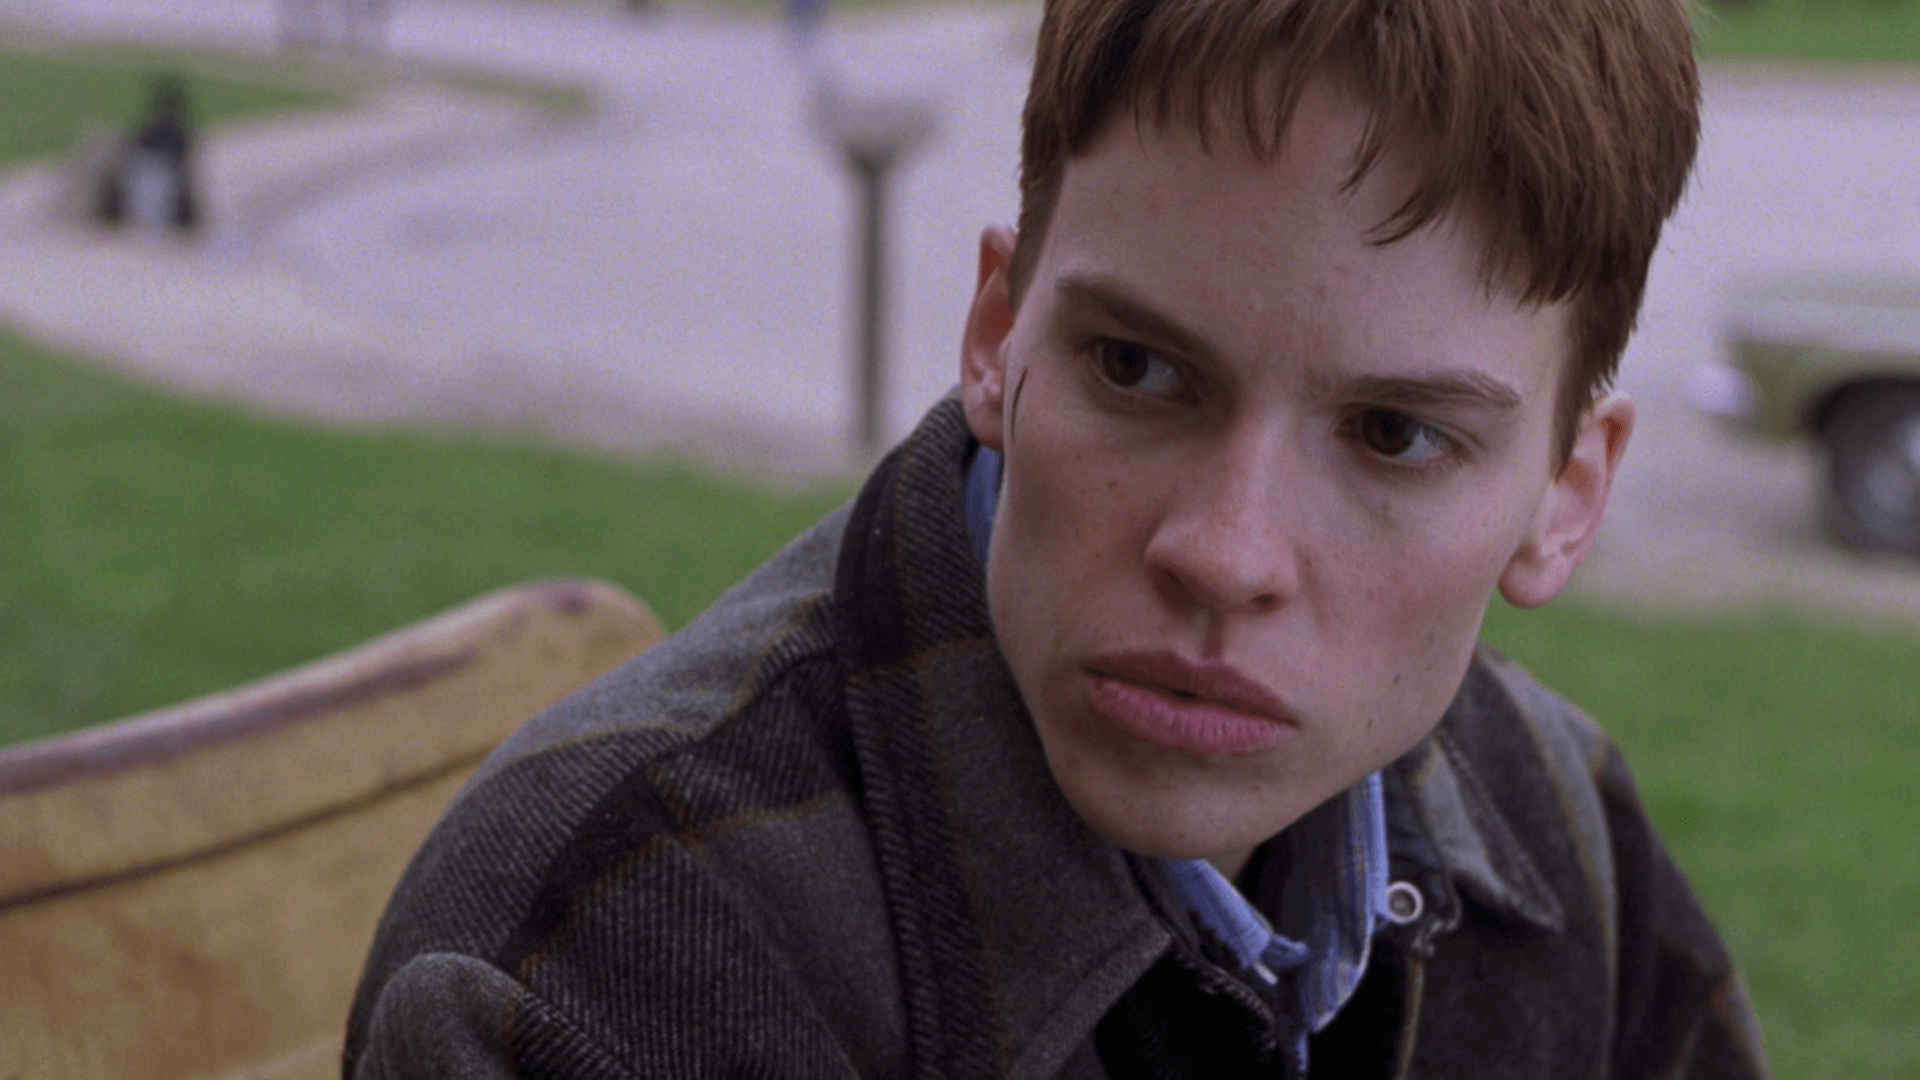 TDOR 2022, gli indimenticabili film che hanno raccontato la comunità trans* - boys don t cry recensione - Gay.it